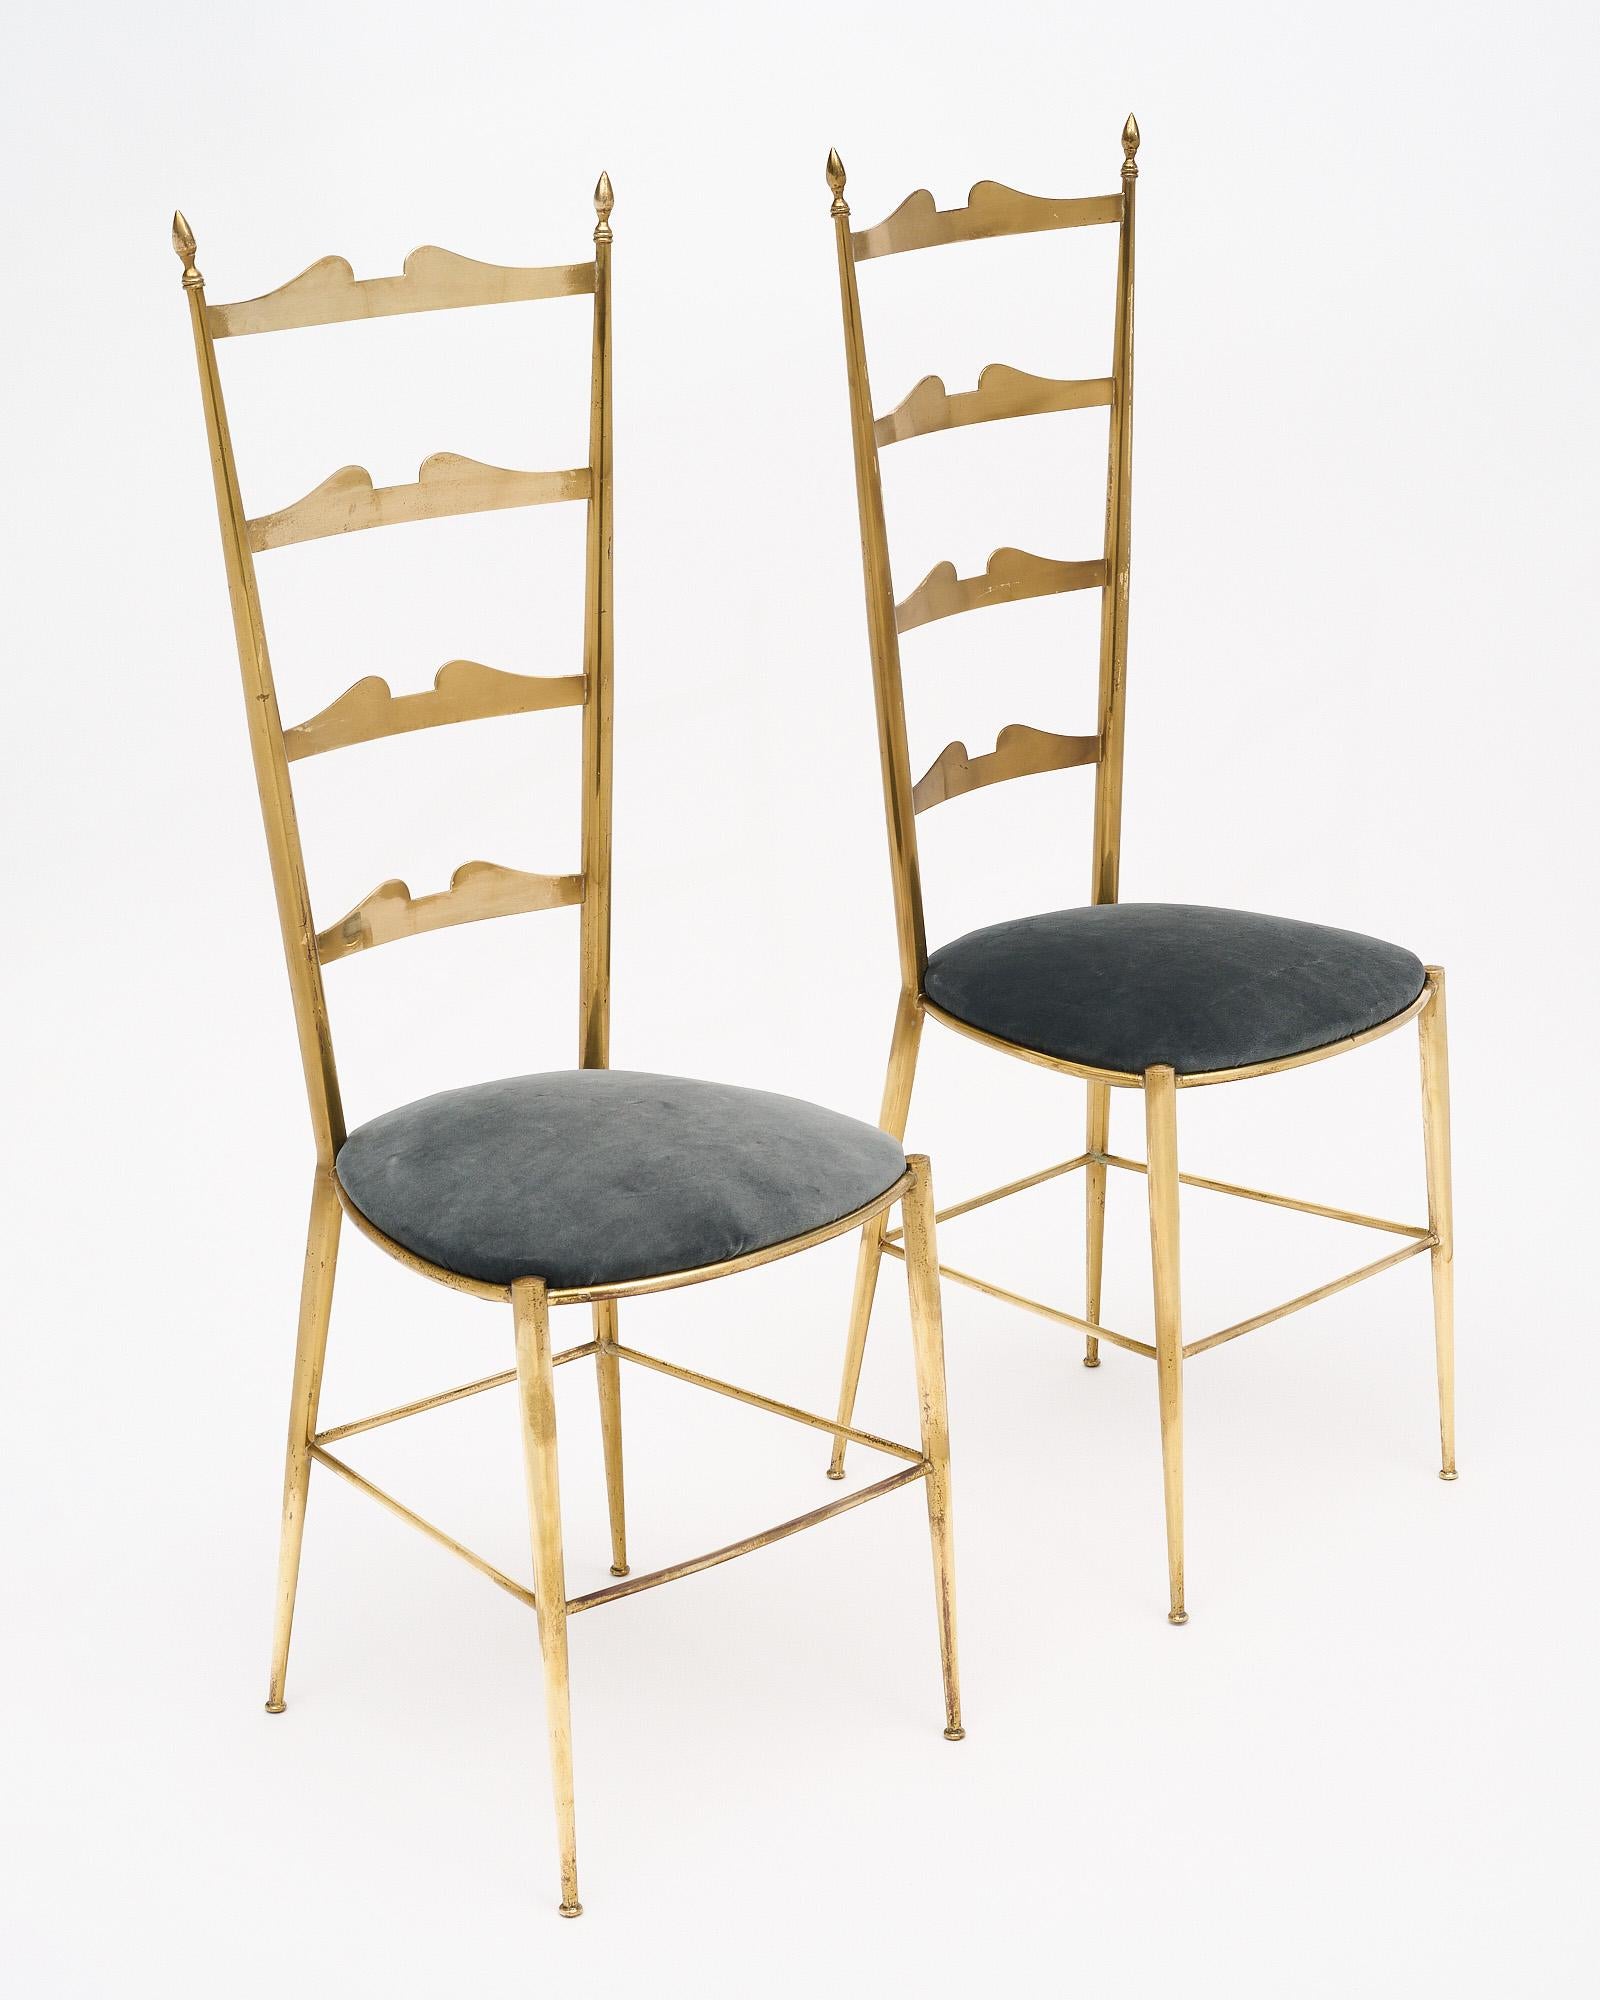 Paire de chaises italiennes à haut dossier, en laiton massif doré, dont l'assise a été récemment recouverte d'un mélange de velours gris. Les chaises Chiavari portent le nom de la ville italienne dont elles sont originaires. La petite ville est